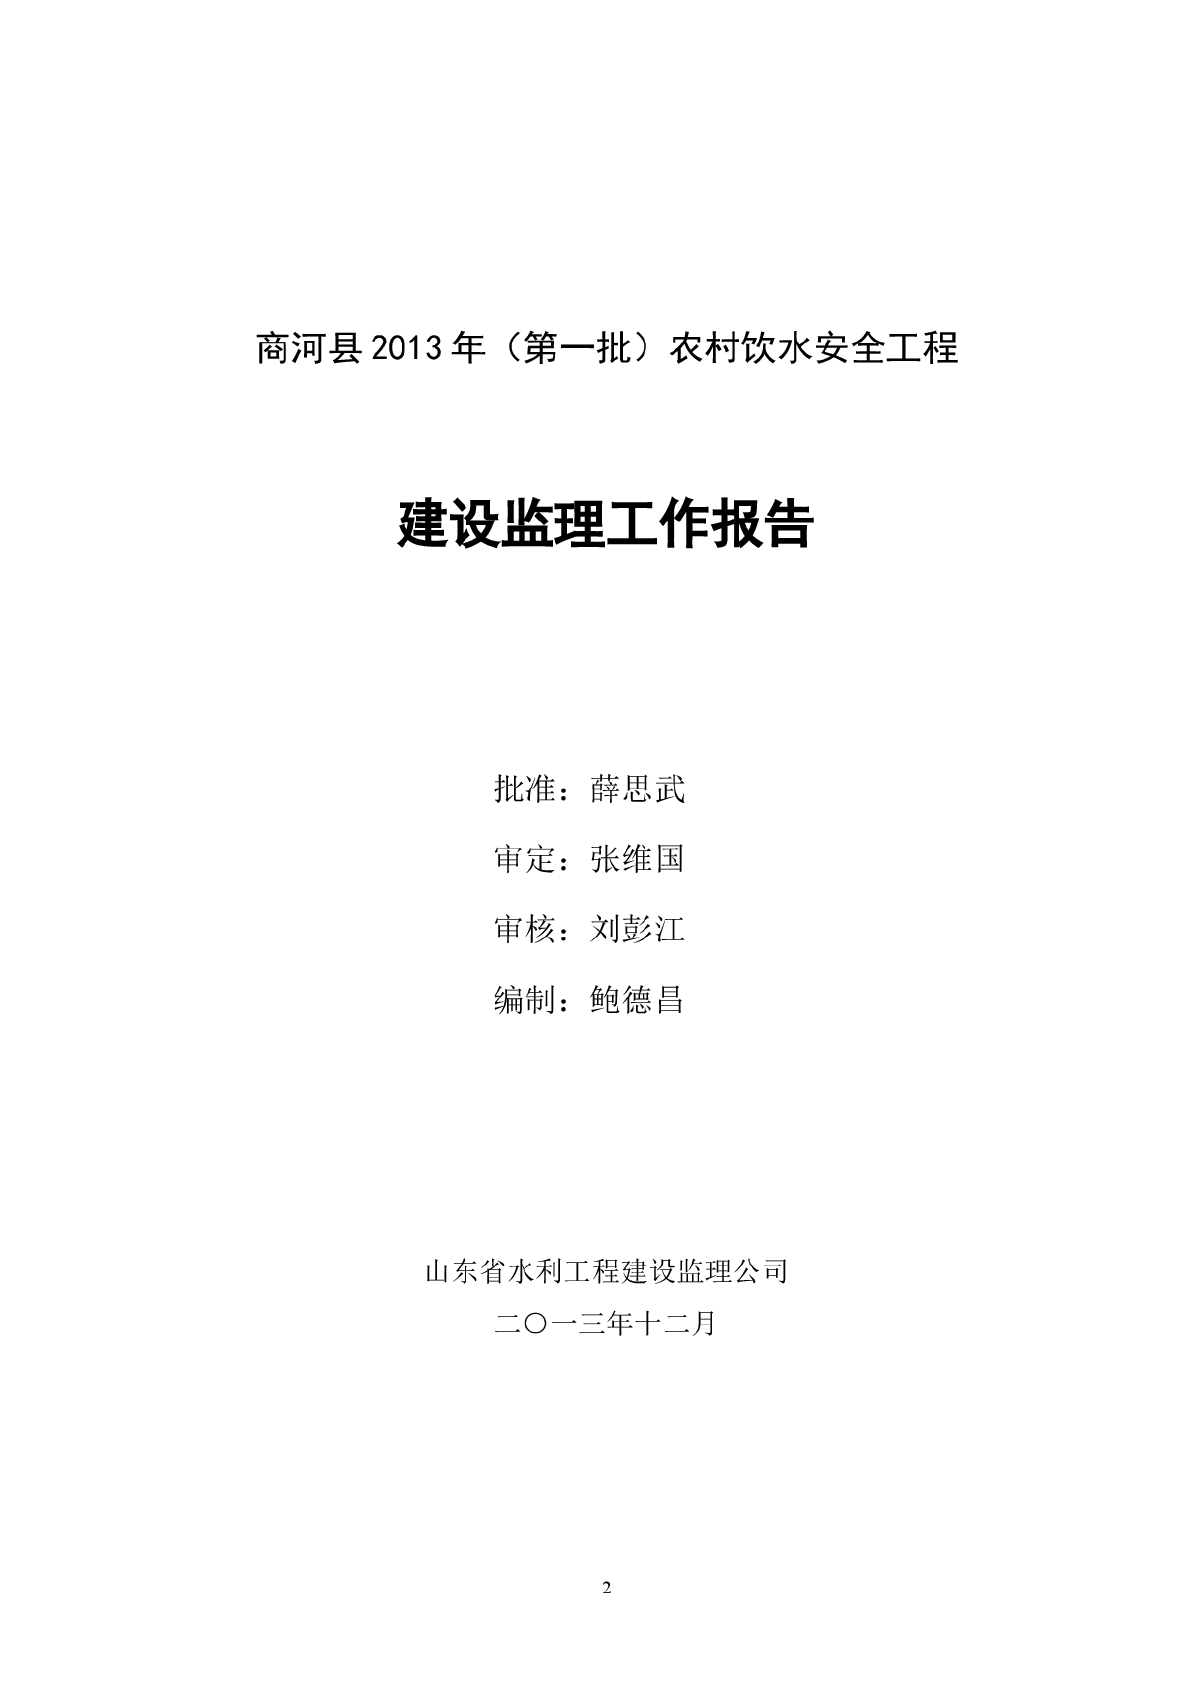 商河县农村饮水安全工程监理工作报告-图二